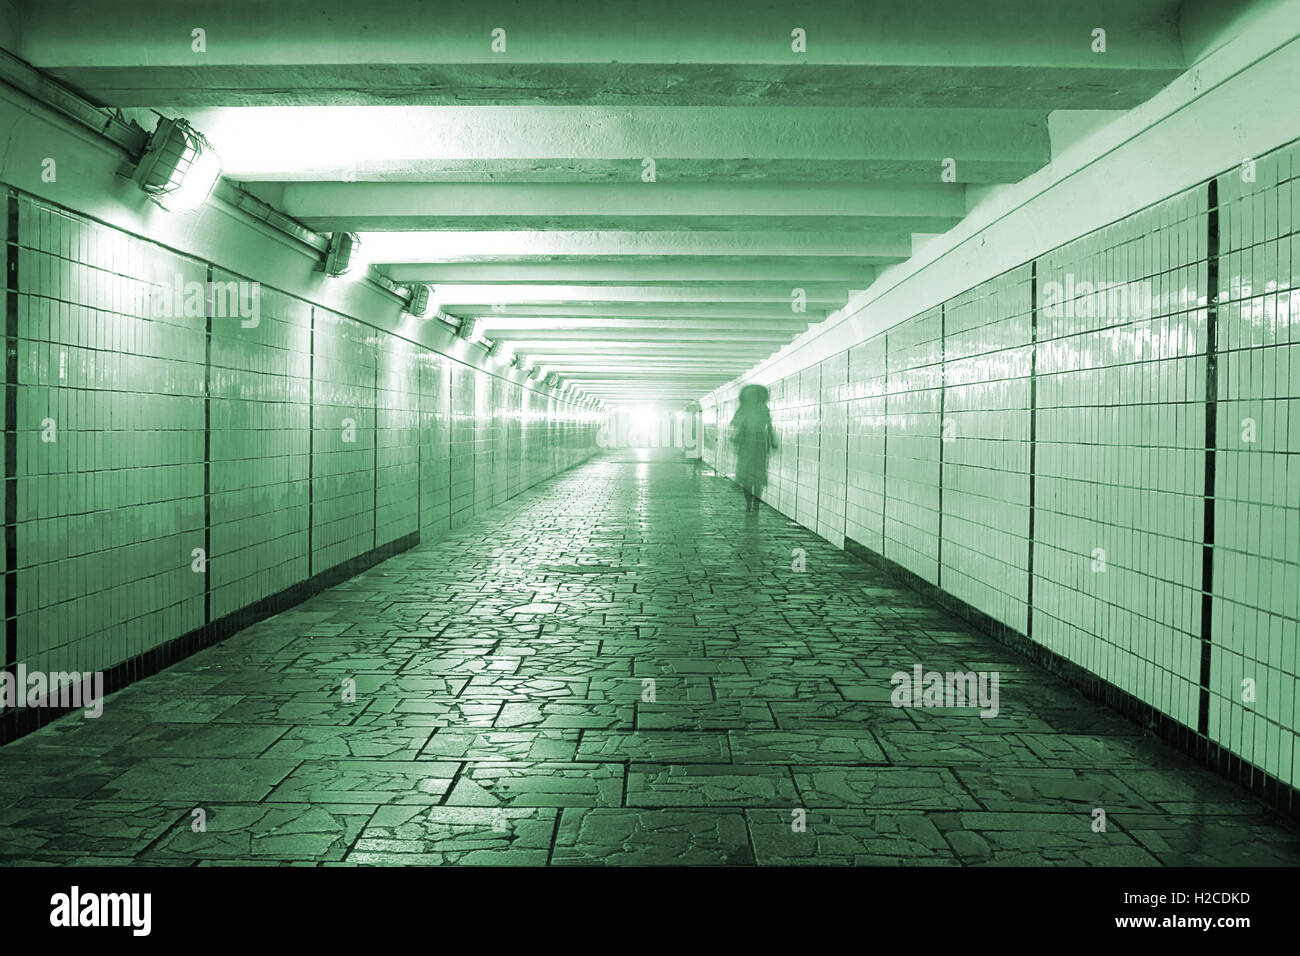 Allegoria mistica immagine: tunnel pedonale con pavimento in pietra con spia luminosa in corrispondenza del suo bordo in remoto e silhouette di donna. Foto Stock